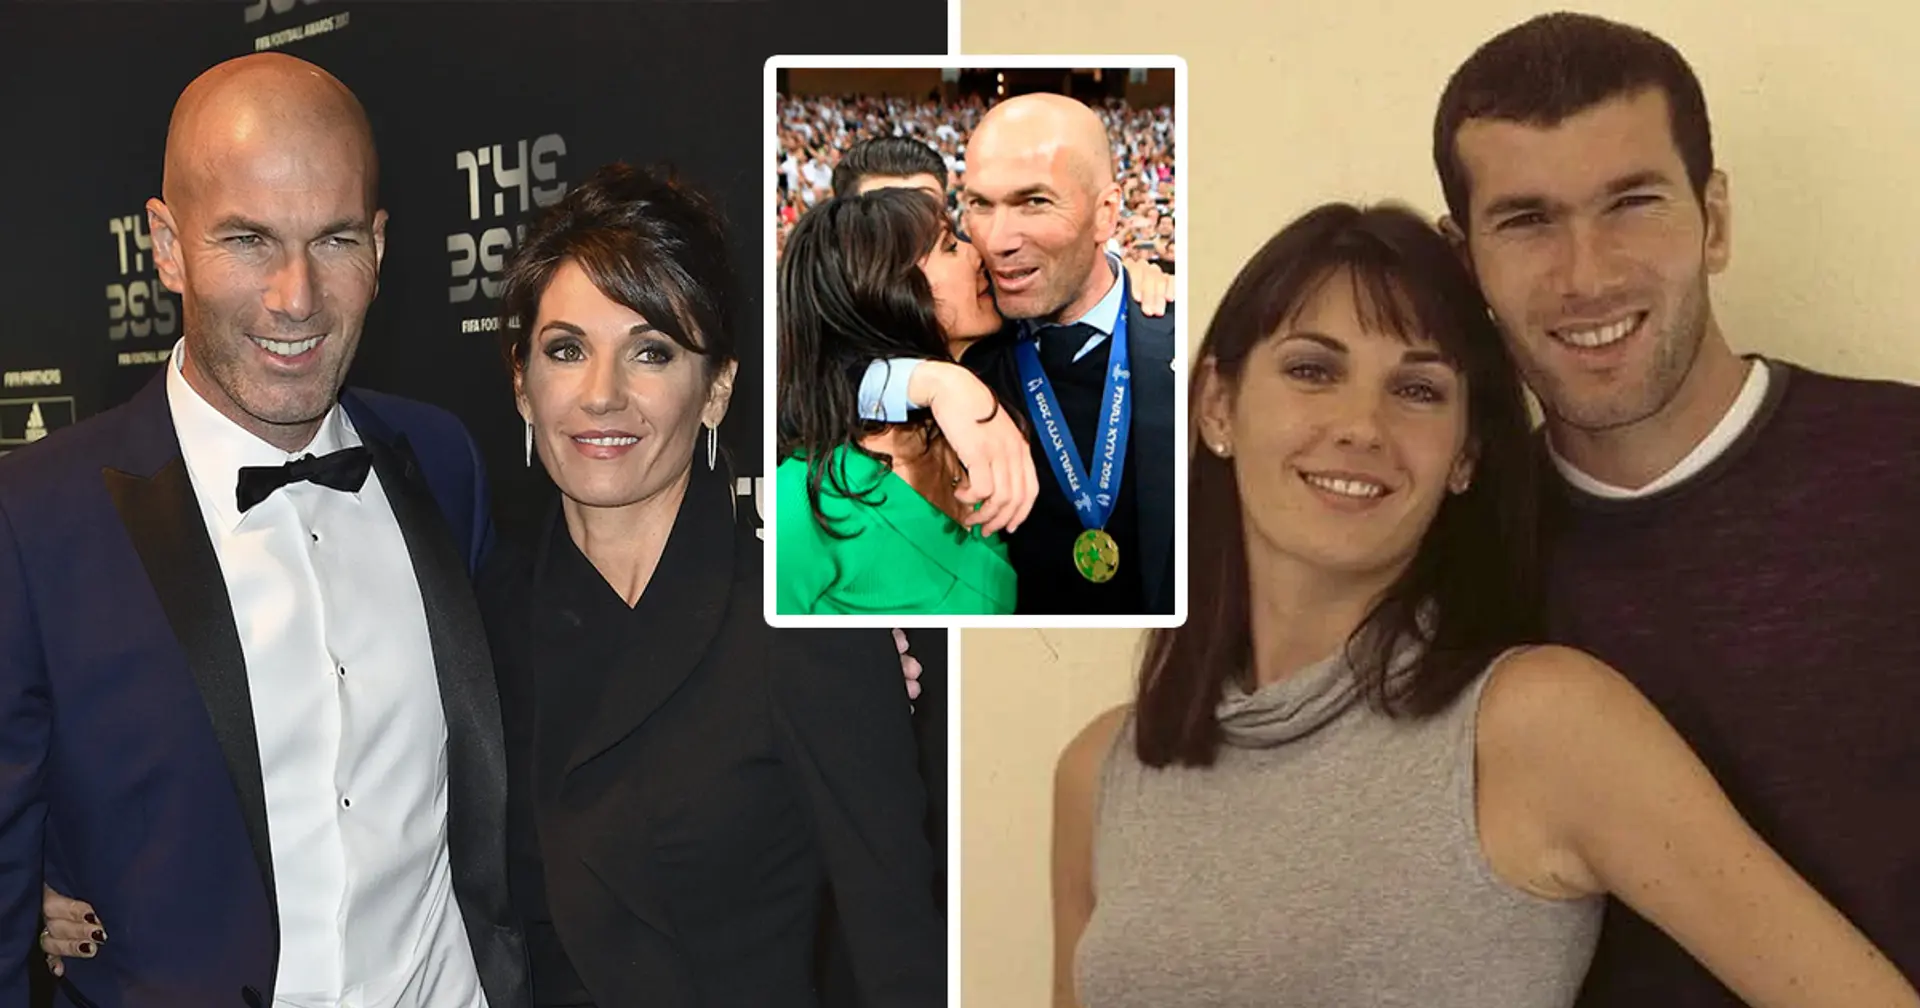 Zidane dit qu'il "se serait jeté du haut d'un immeuble" pour impressionner sa femme